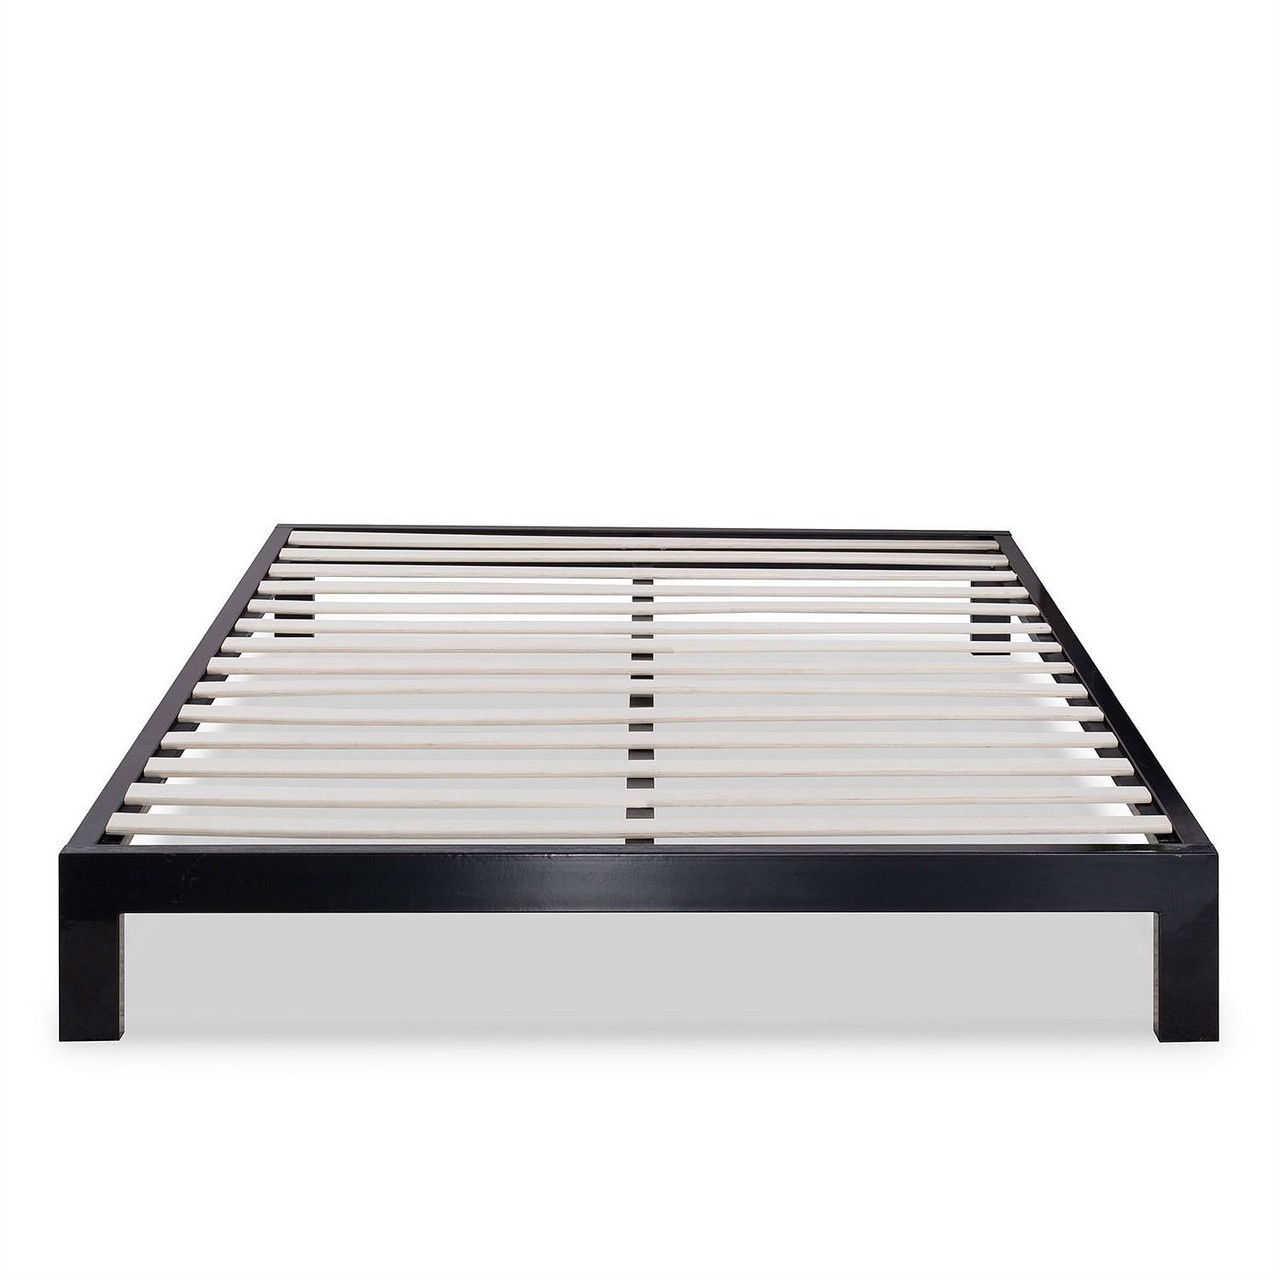 King size Modern Black Metal Platform Bed Frame with Wood Slats